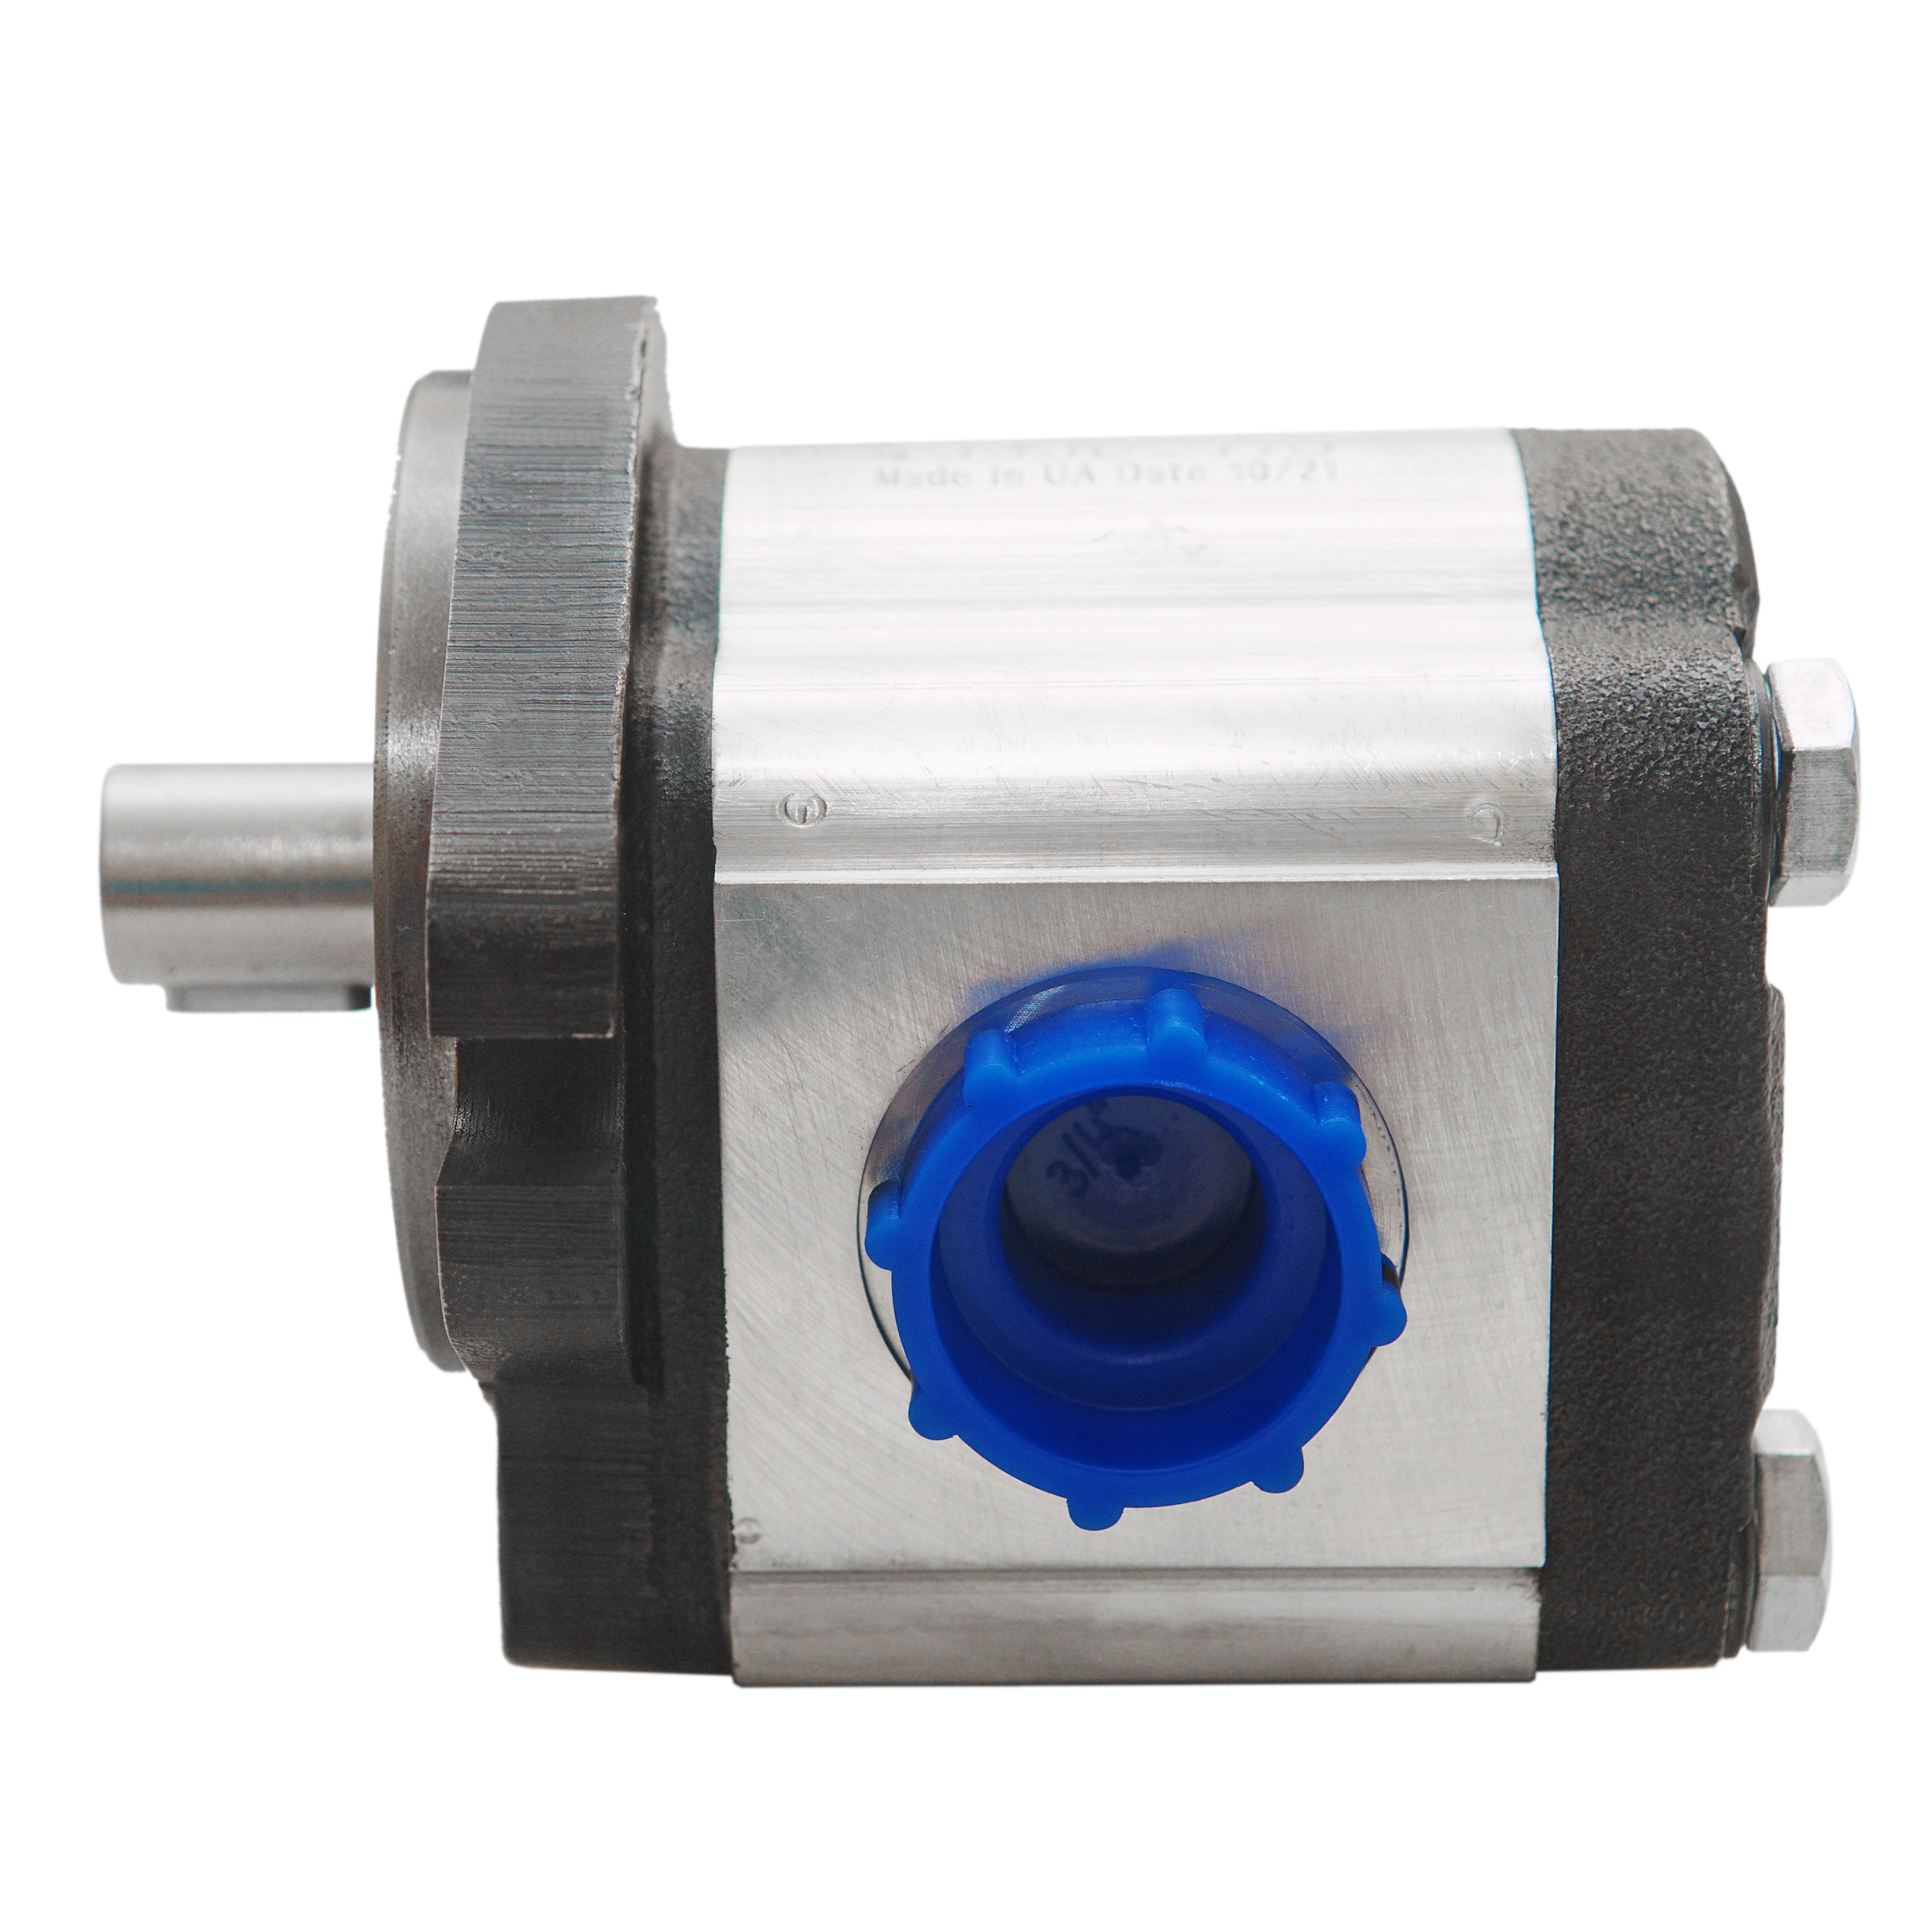 0.38 CID hydraulic gear pump, 5/8 keyed shaft counter-clockwise gear pump | Magister Hydraulics